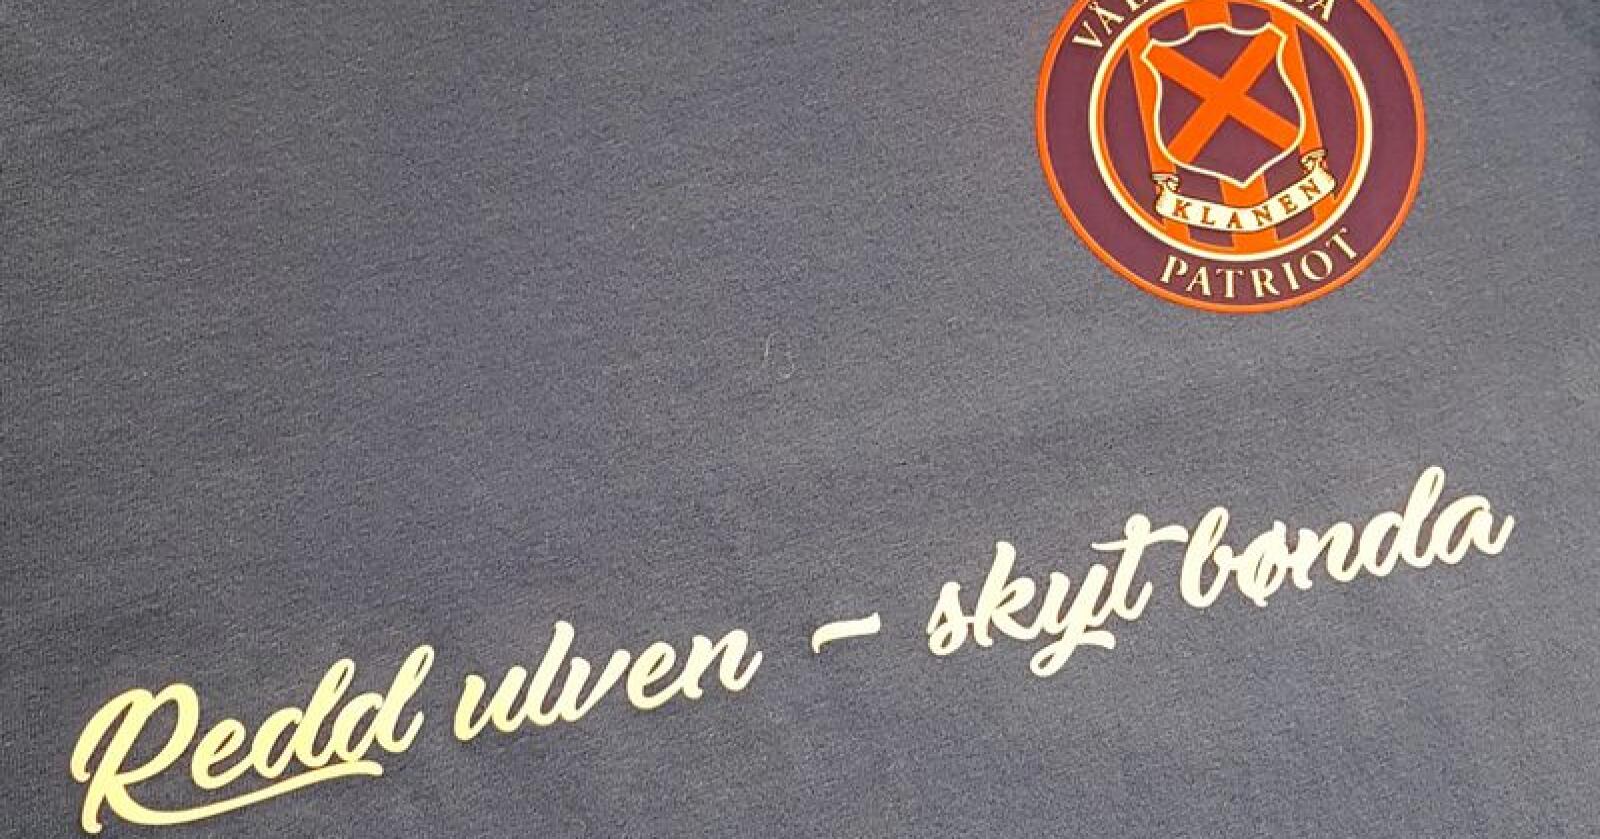 «Redd ulven skyt bønda» står det på de nye t-skjortene til Klanen. Foto: Kristian Kjellsen / Klanen.no